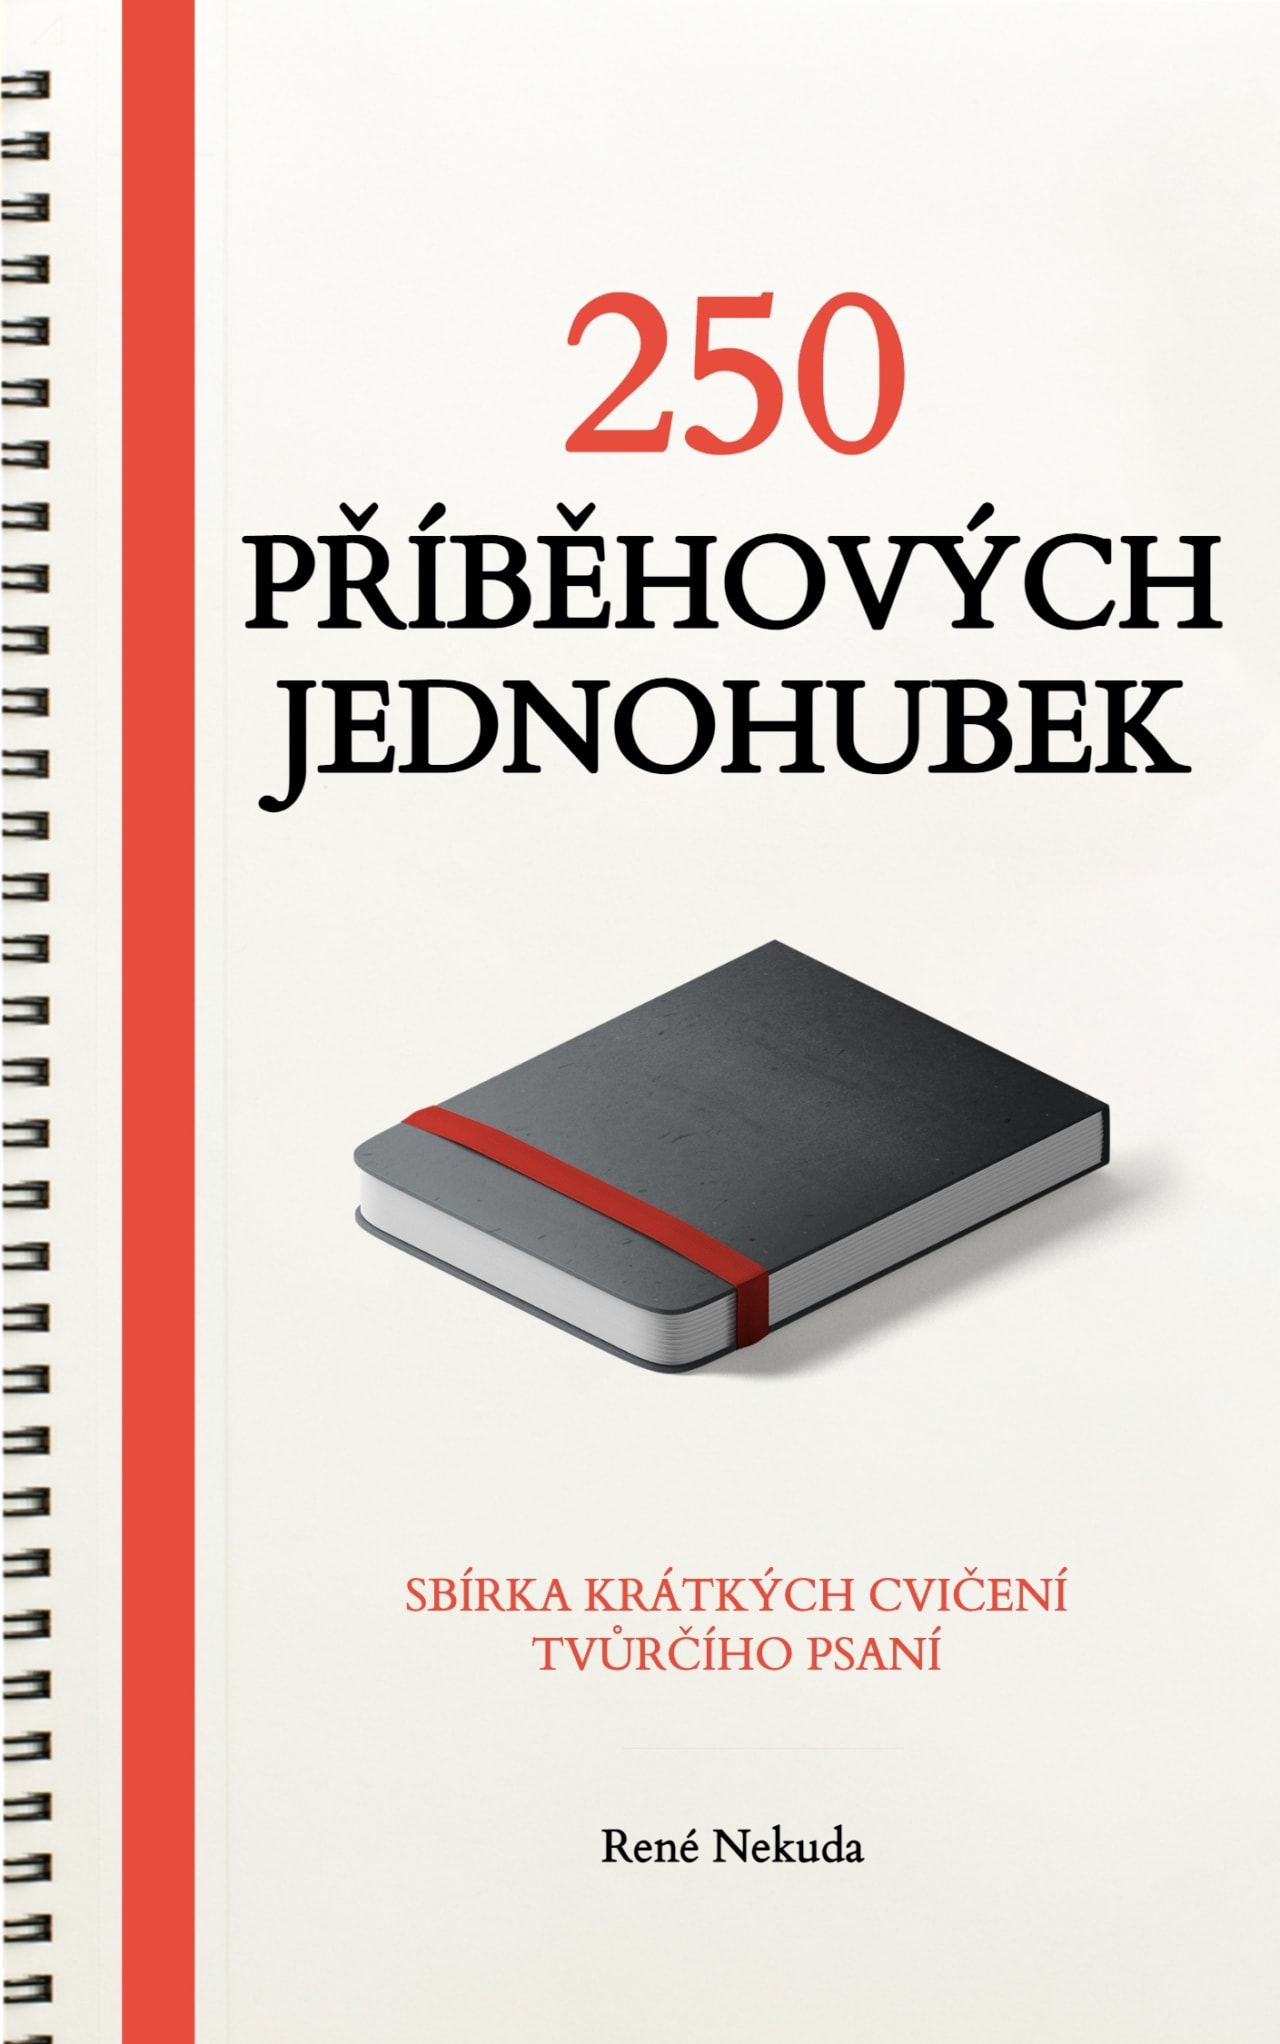 250 Příběhových jednohubek (e-kniha o tvůrčím psaní)